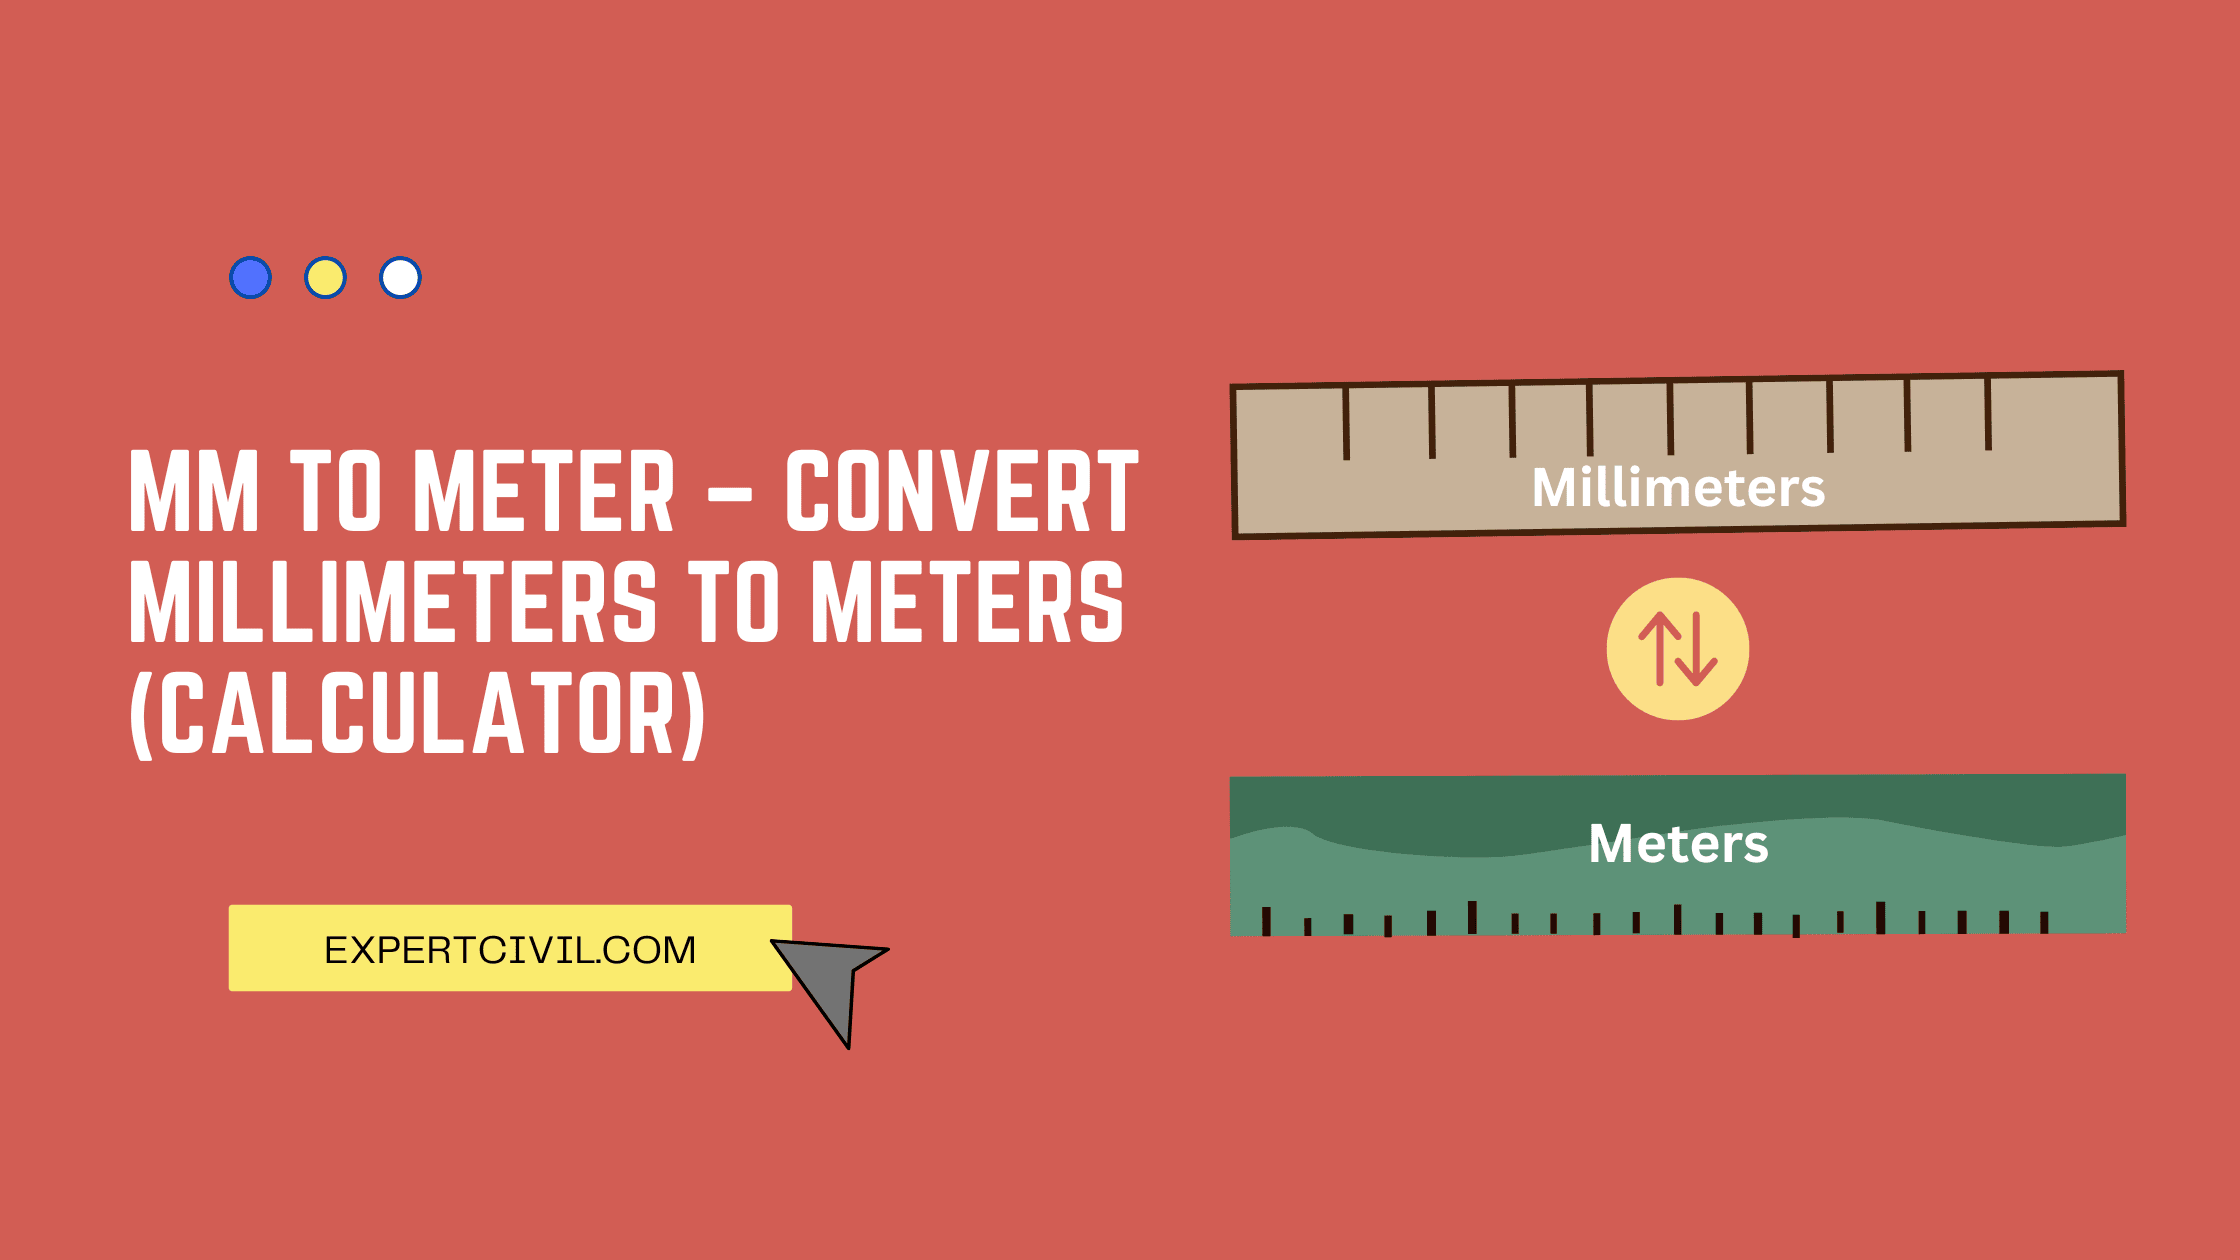 nauwelijks Abstractie gebaar mm to meter - Convert Millimeters to Meters (Calculator)